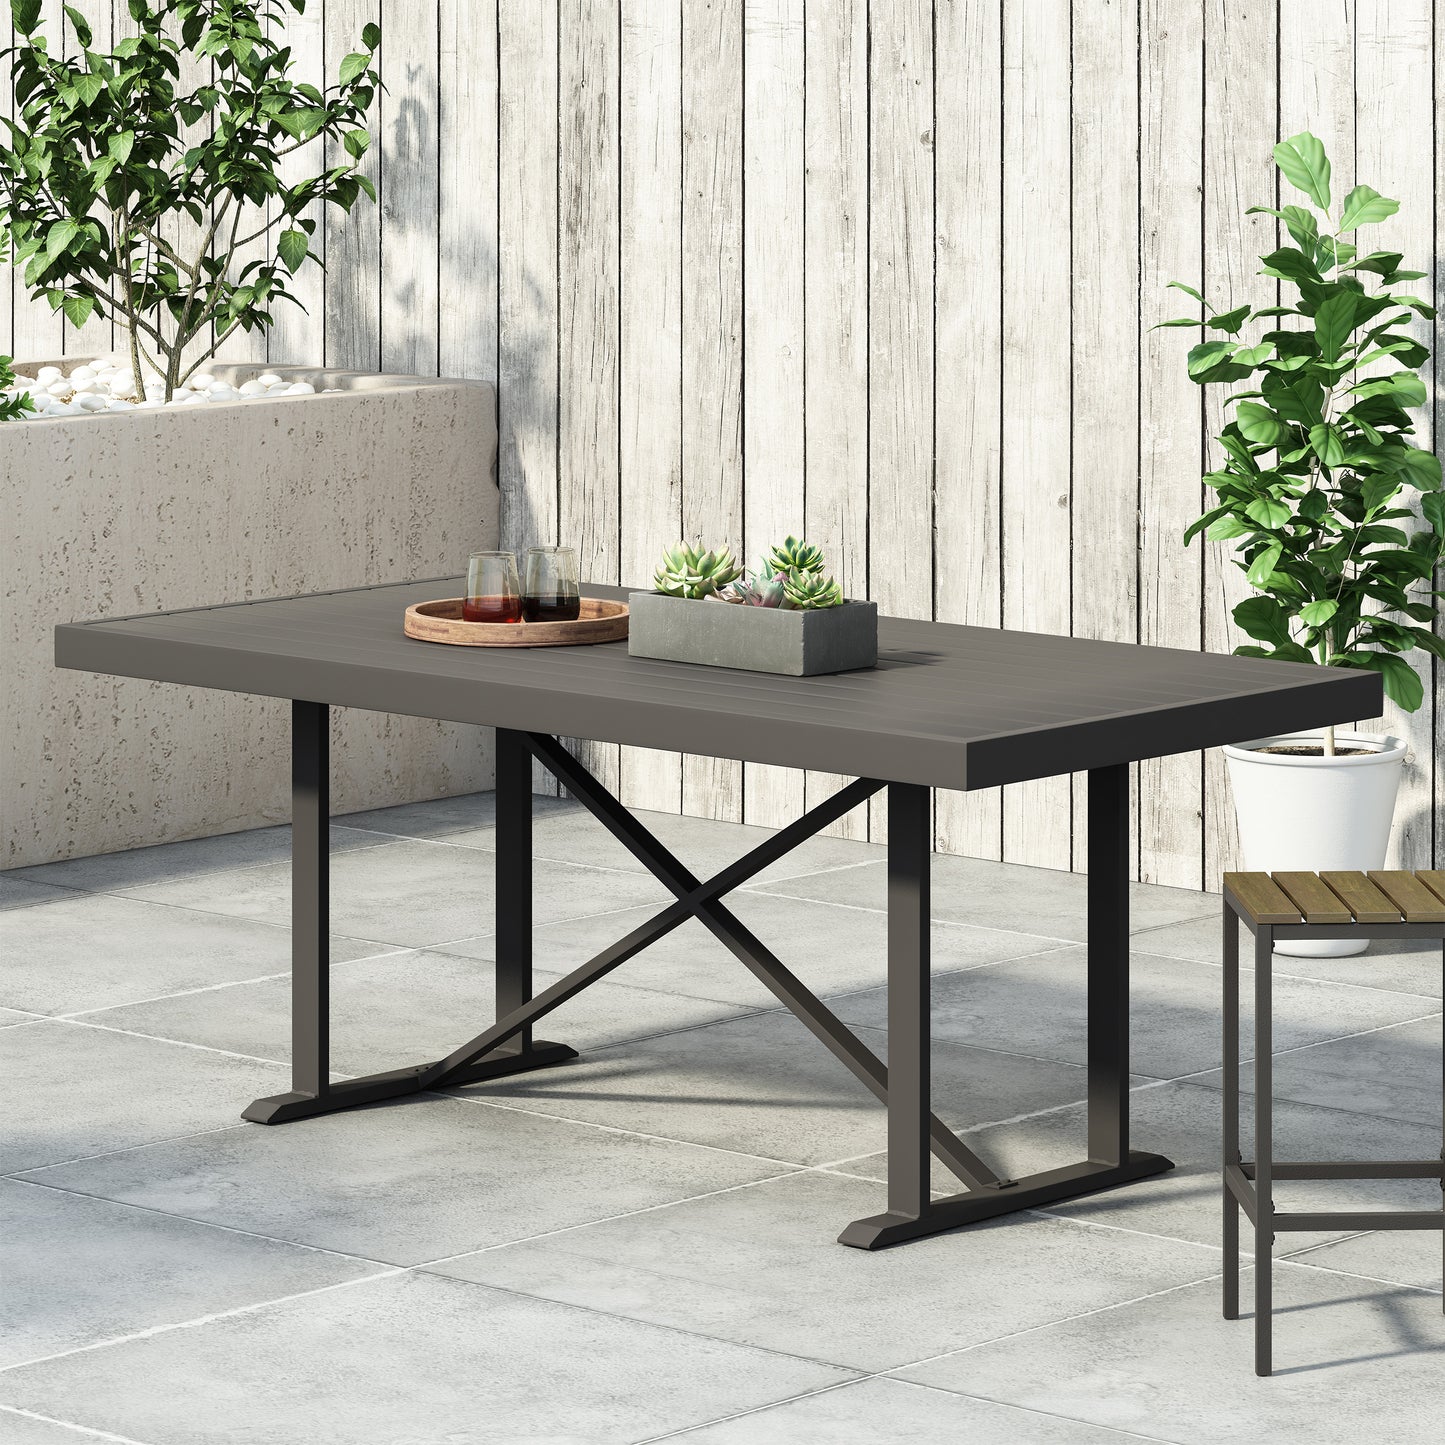 Mavin Outdoor Modern Industrial Aluminum Dining Table